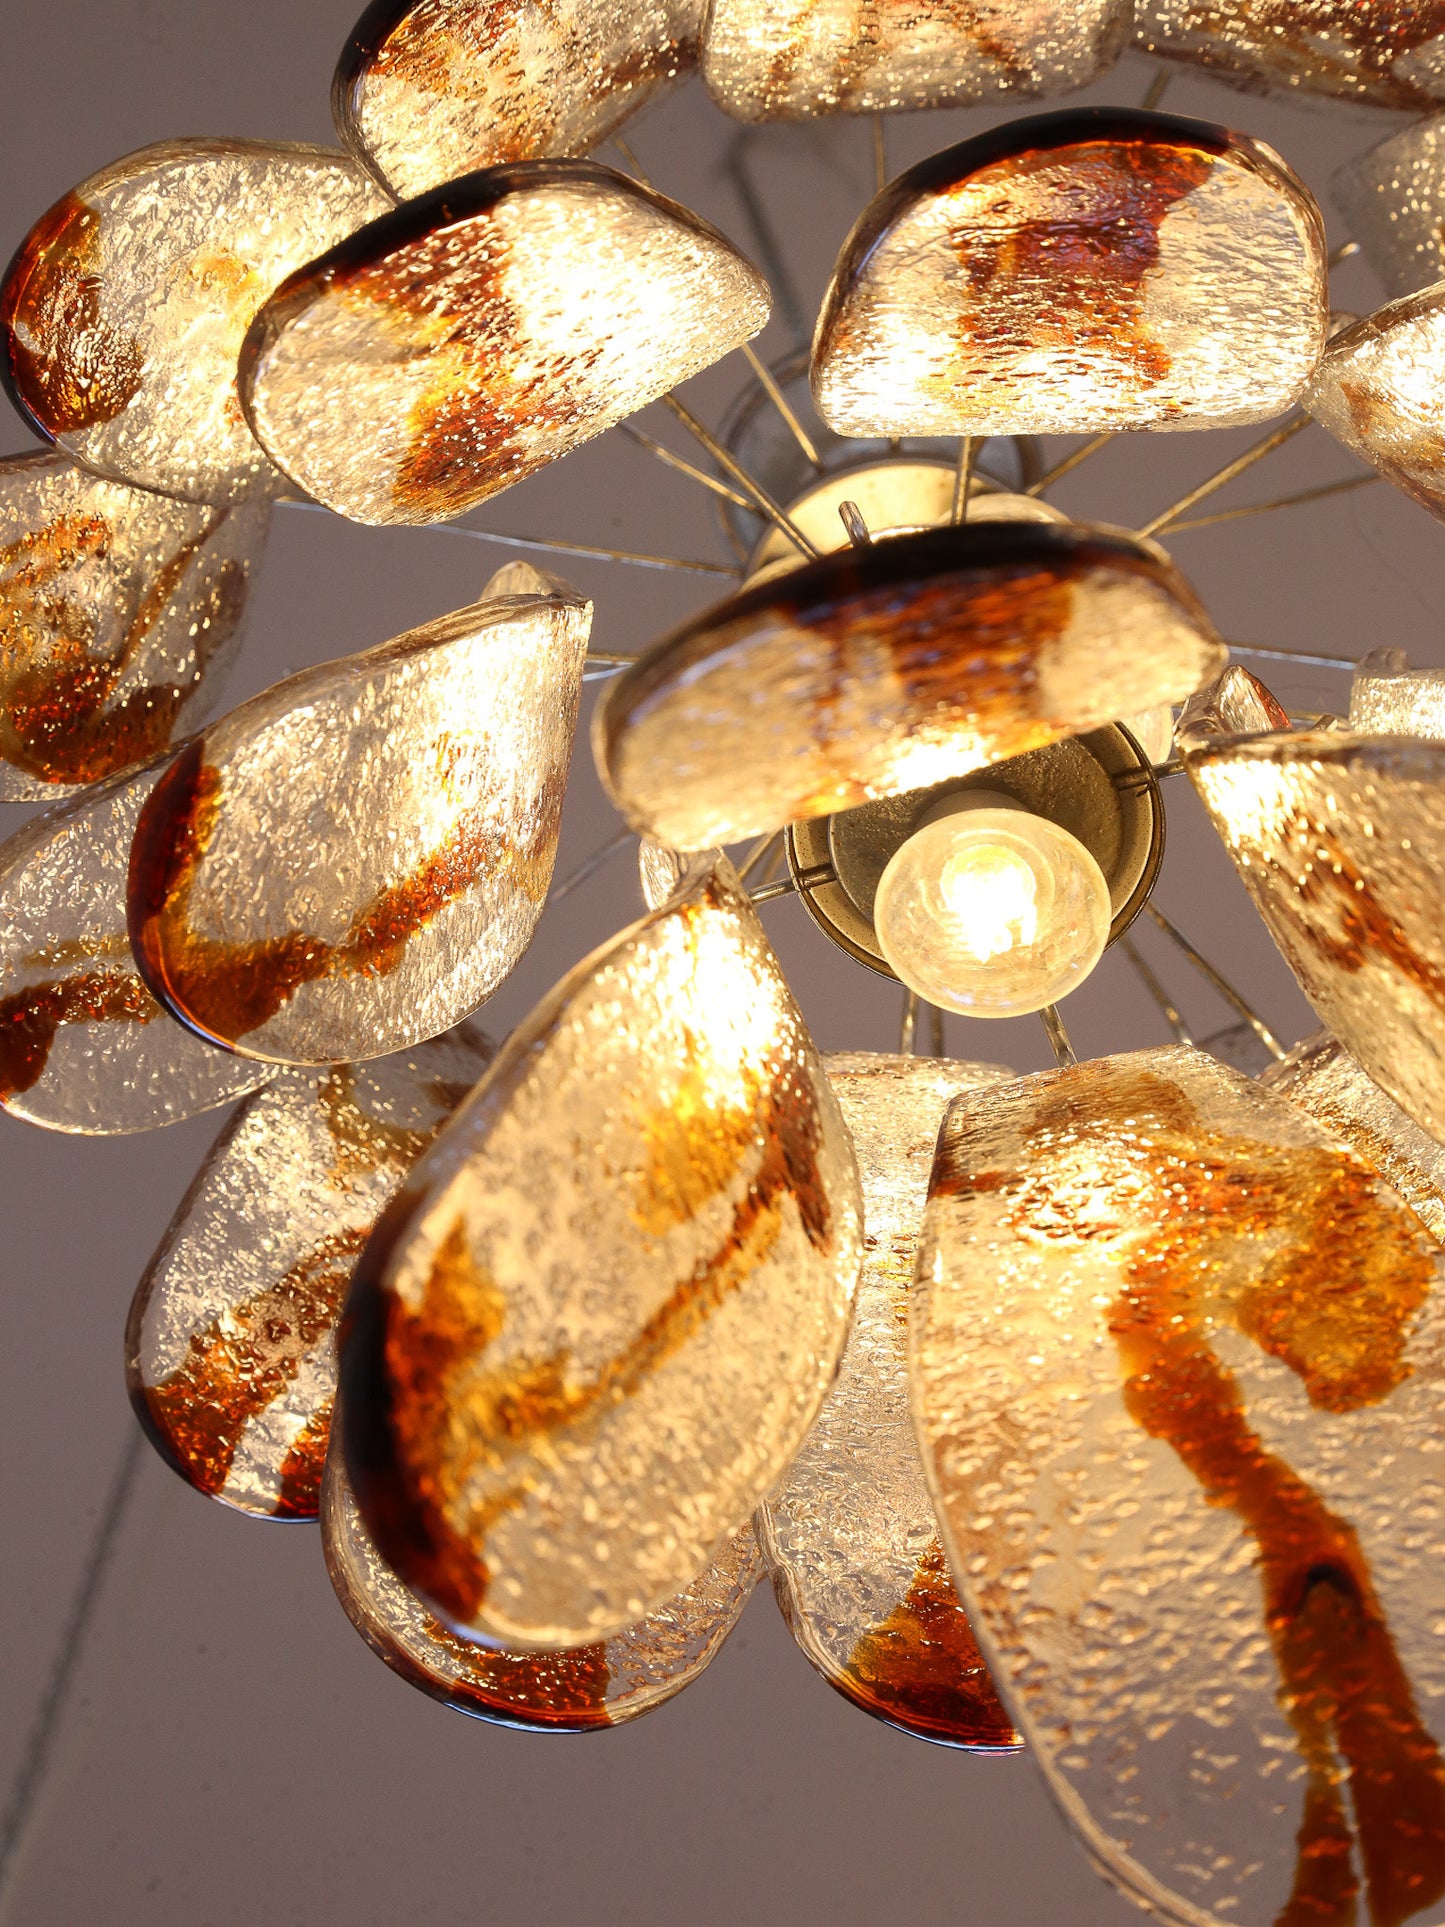 Amber Murano Glass and Chrome Pendant Light by AV Mazzega